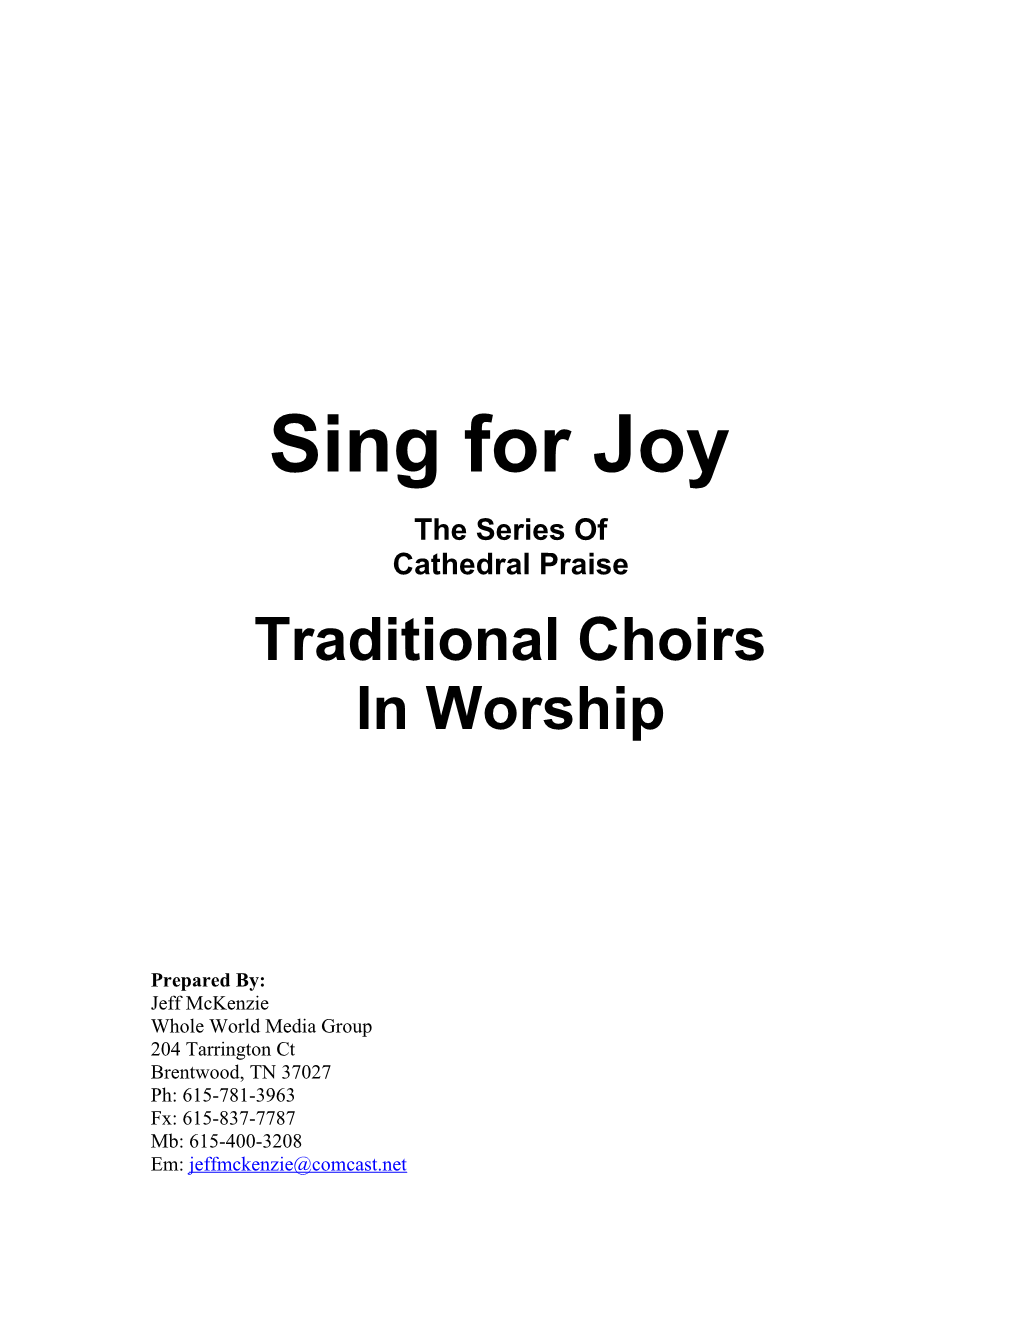 Sing for Joy Series